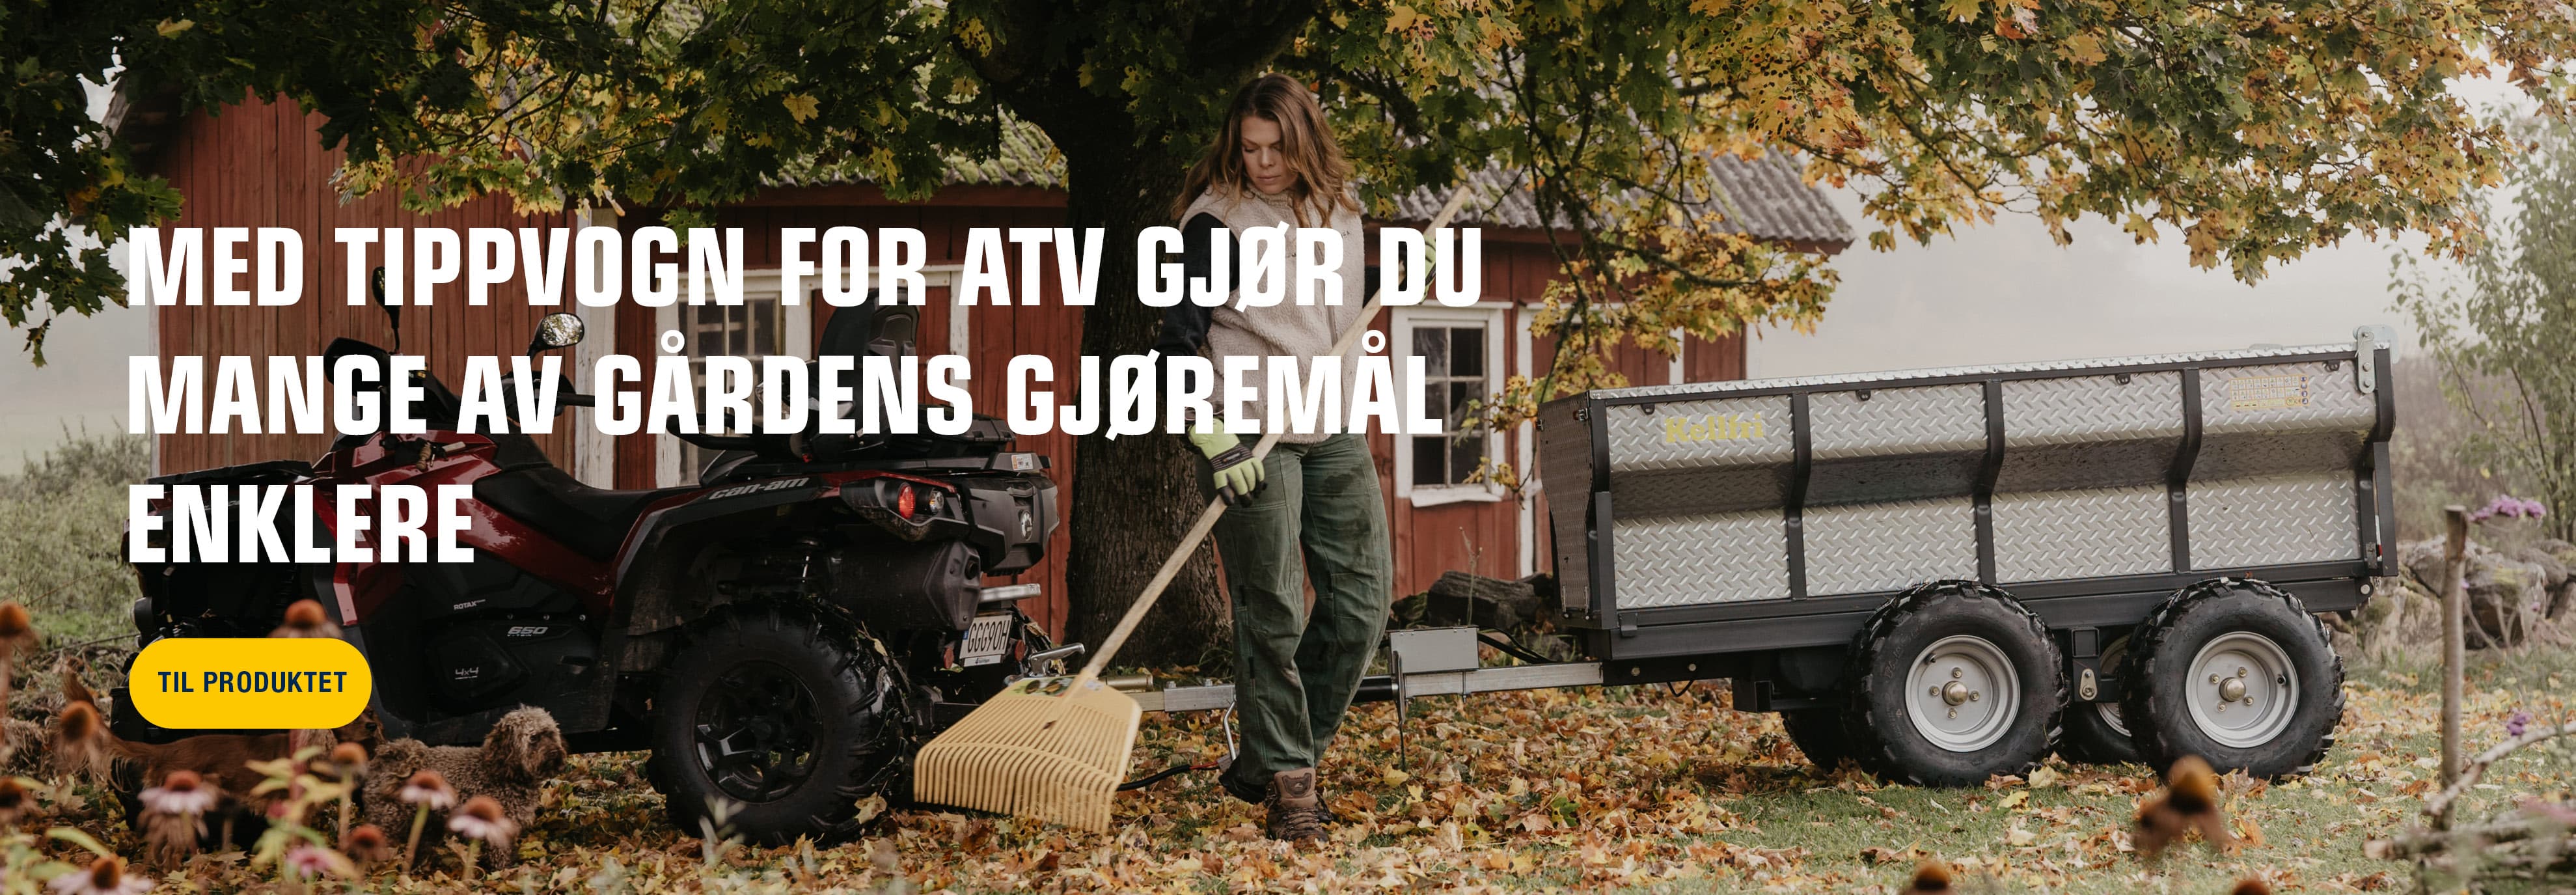 TV10H Jäla 1900x660 NO.jpg